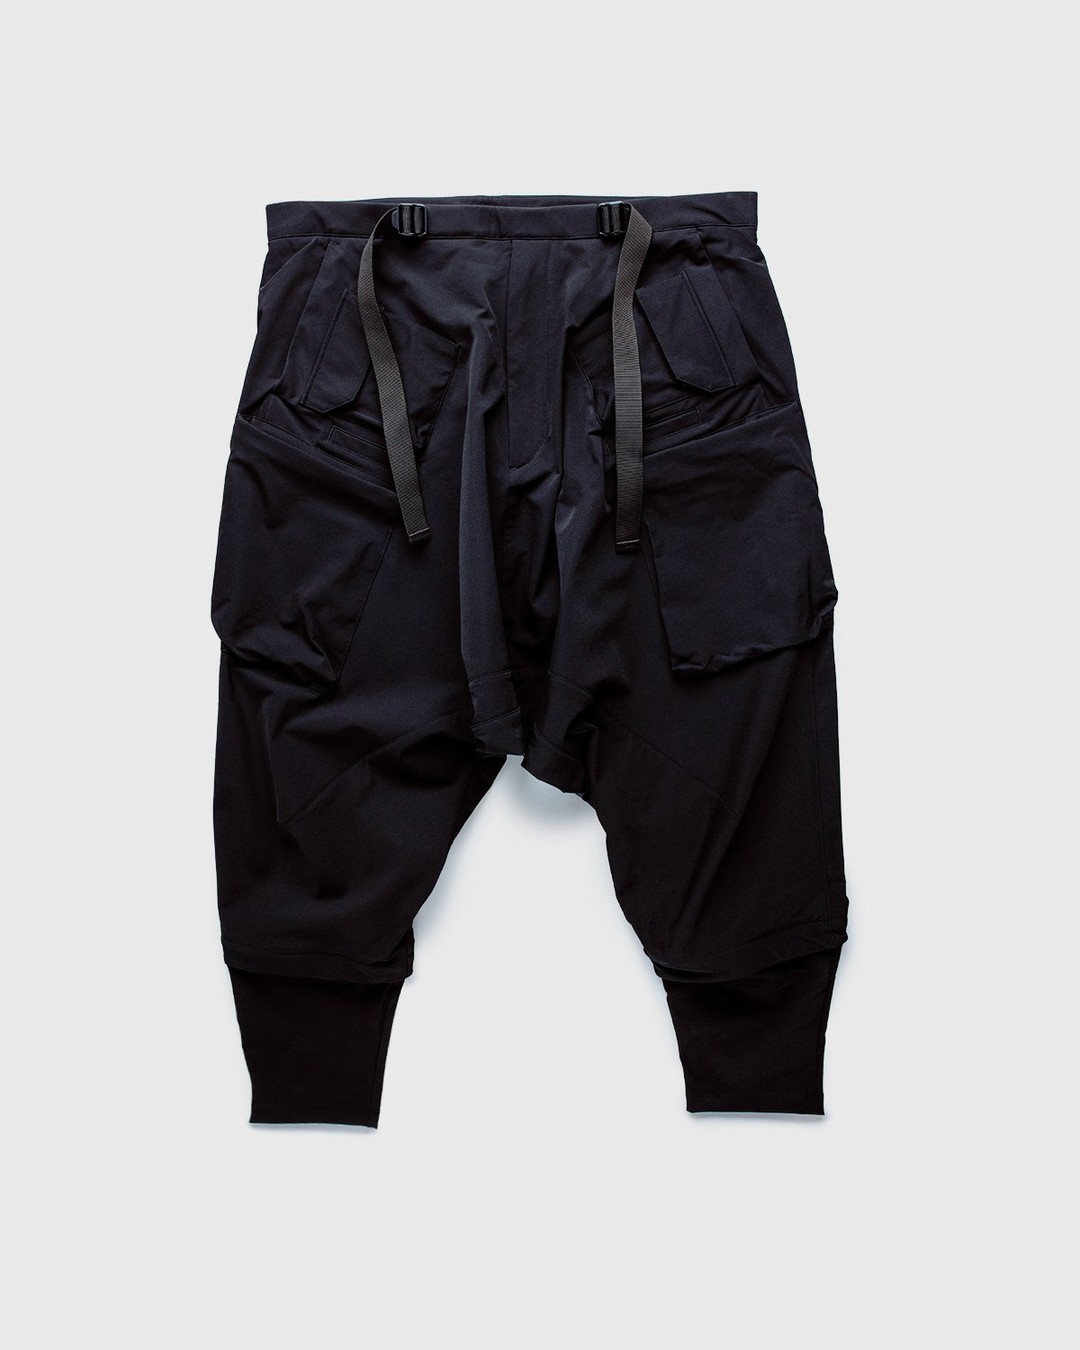 ACRONYM – P30A-DS Pants Black - Pants - Black - Image 1